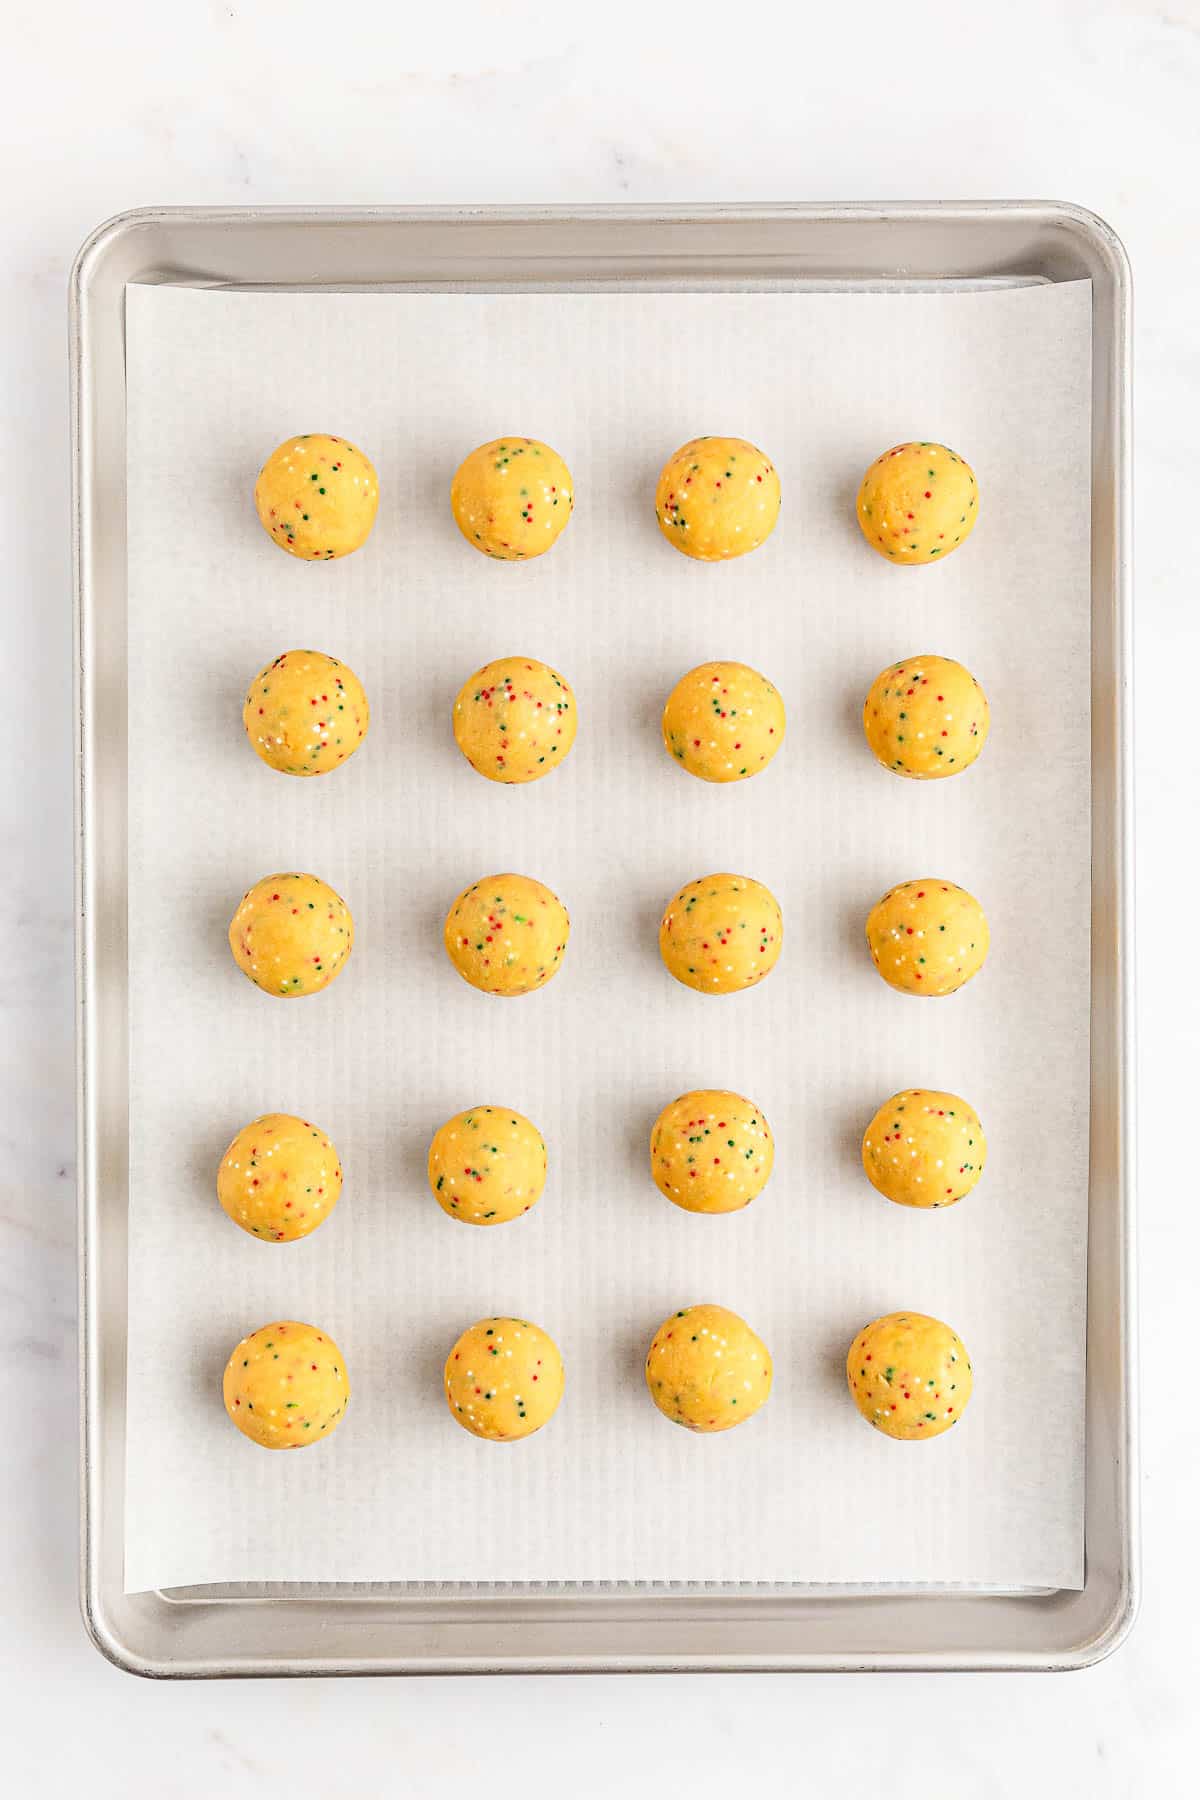 A baking sheet with golden oreo balls.